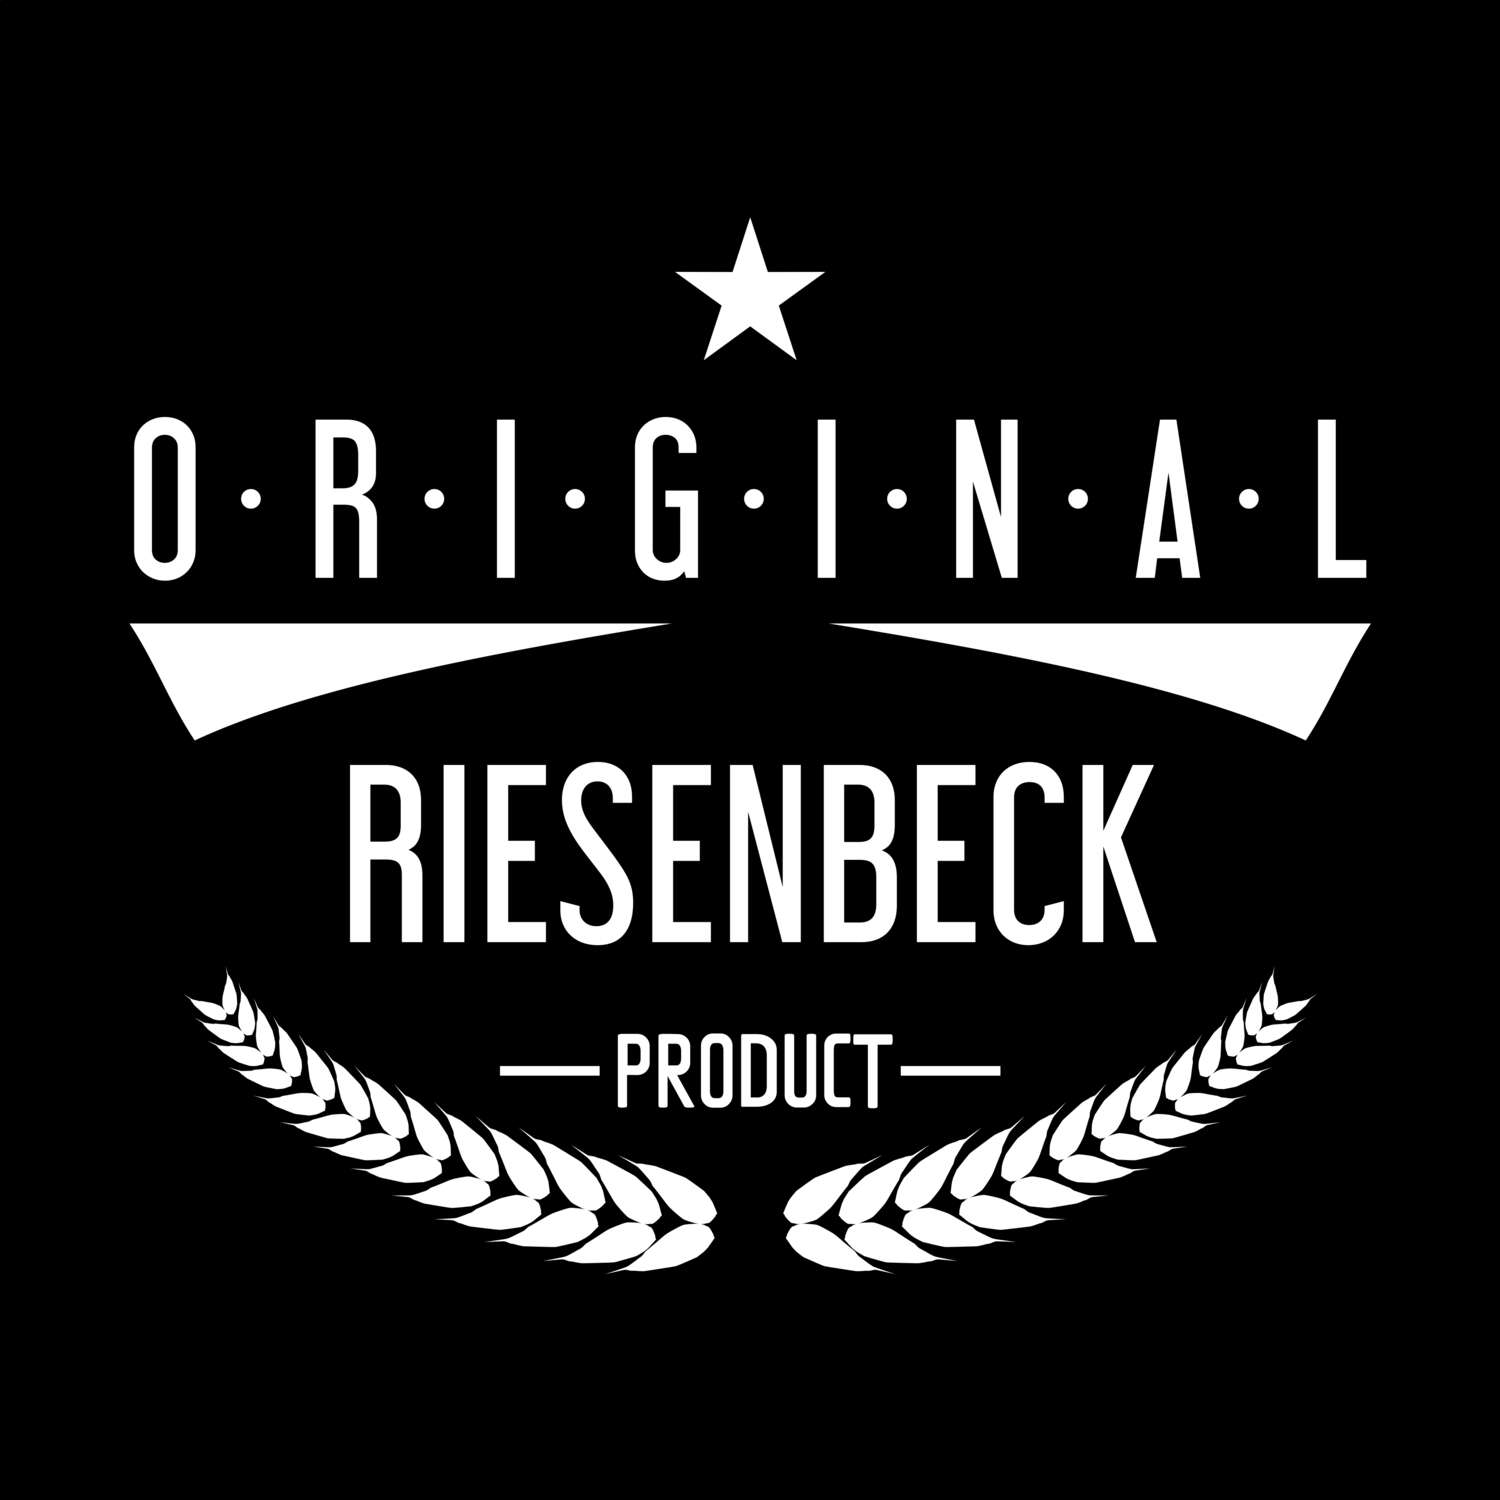 Riesenbeck T-Shirt »Original Product«